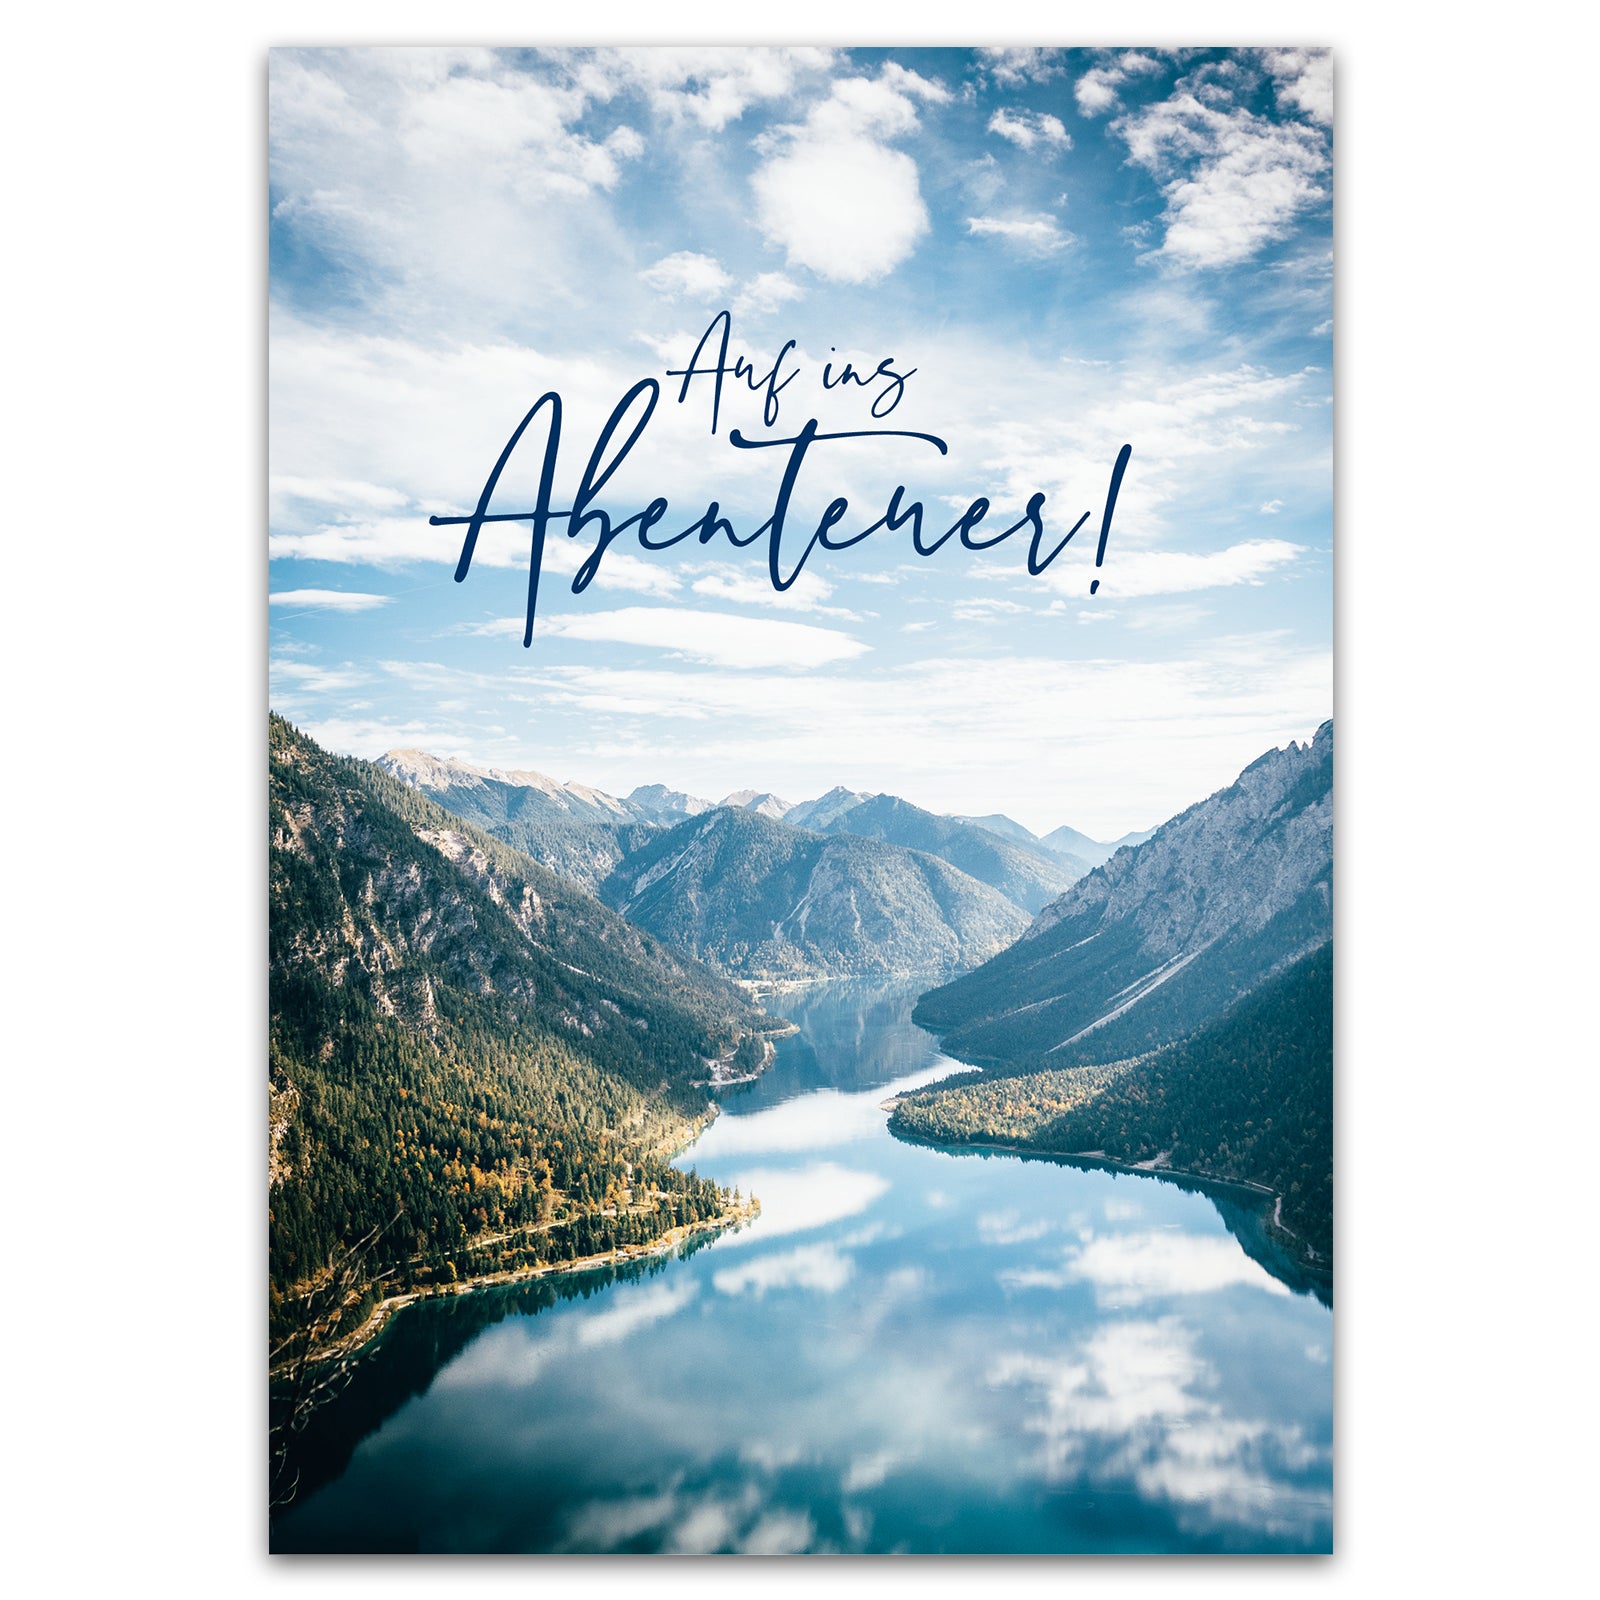 Postkarte "Auf ins Abenteuer!"